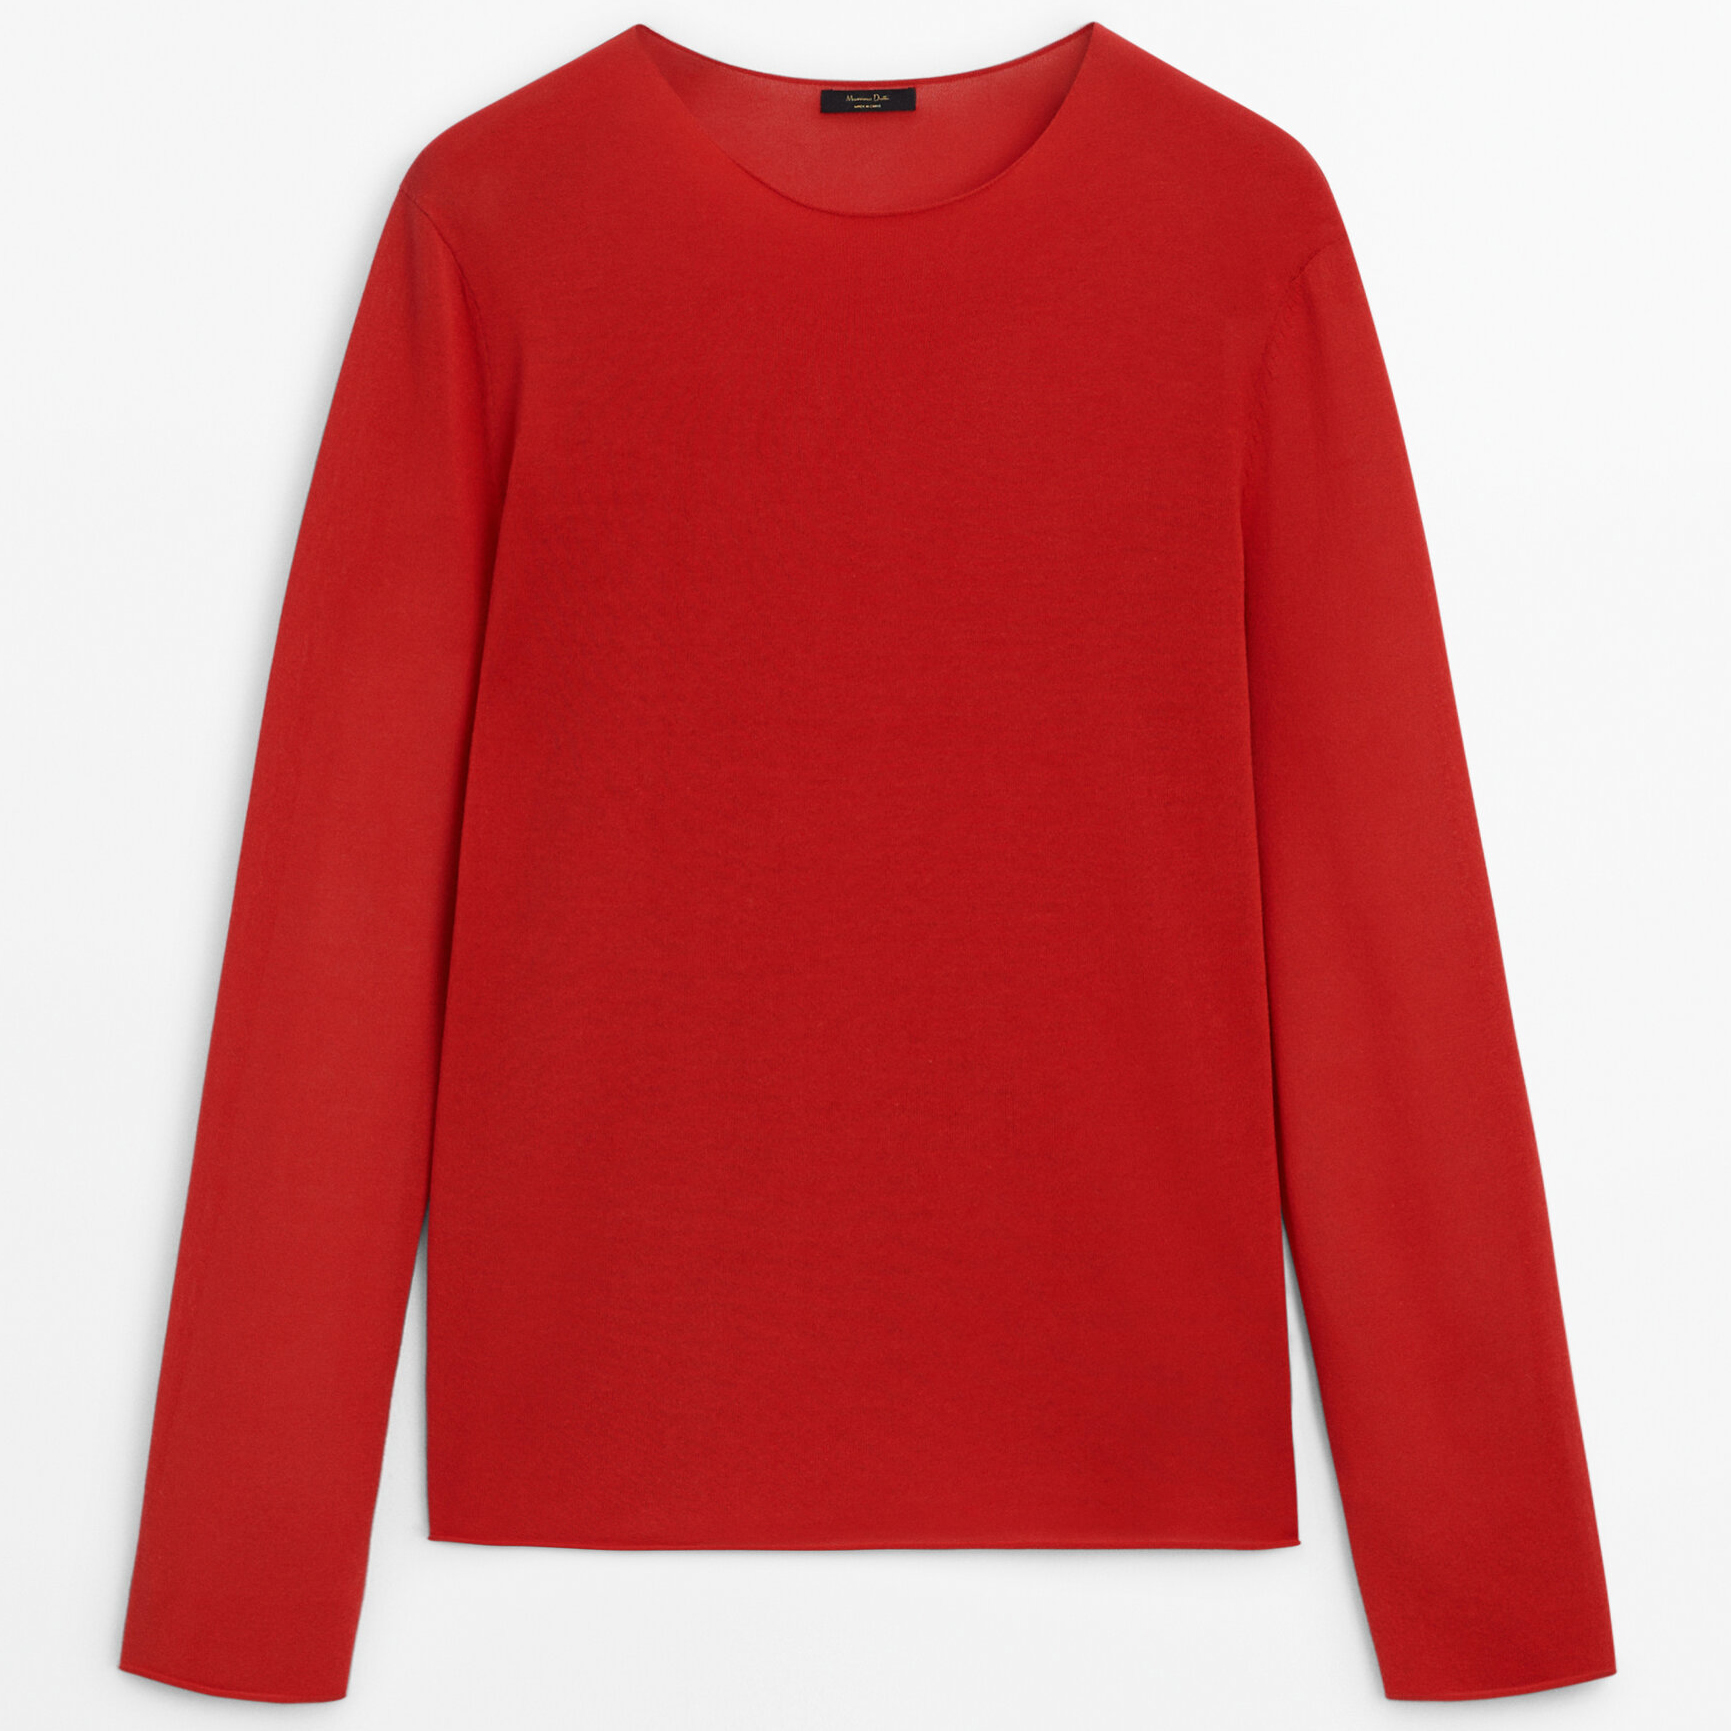 Джемпер Massimo Dutti Extra Fine Knit Crew Neck, красный джемпер uniqlo cashmere 3d knit seamless v neck красный